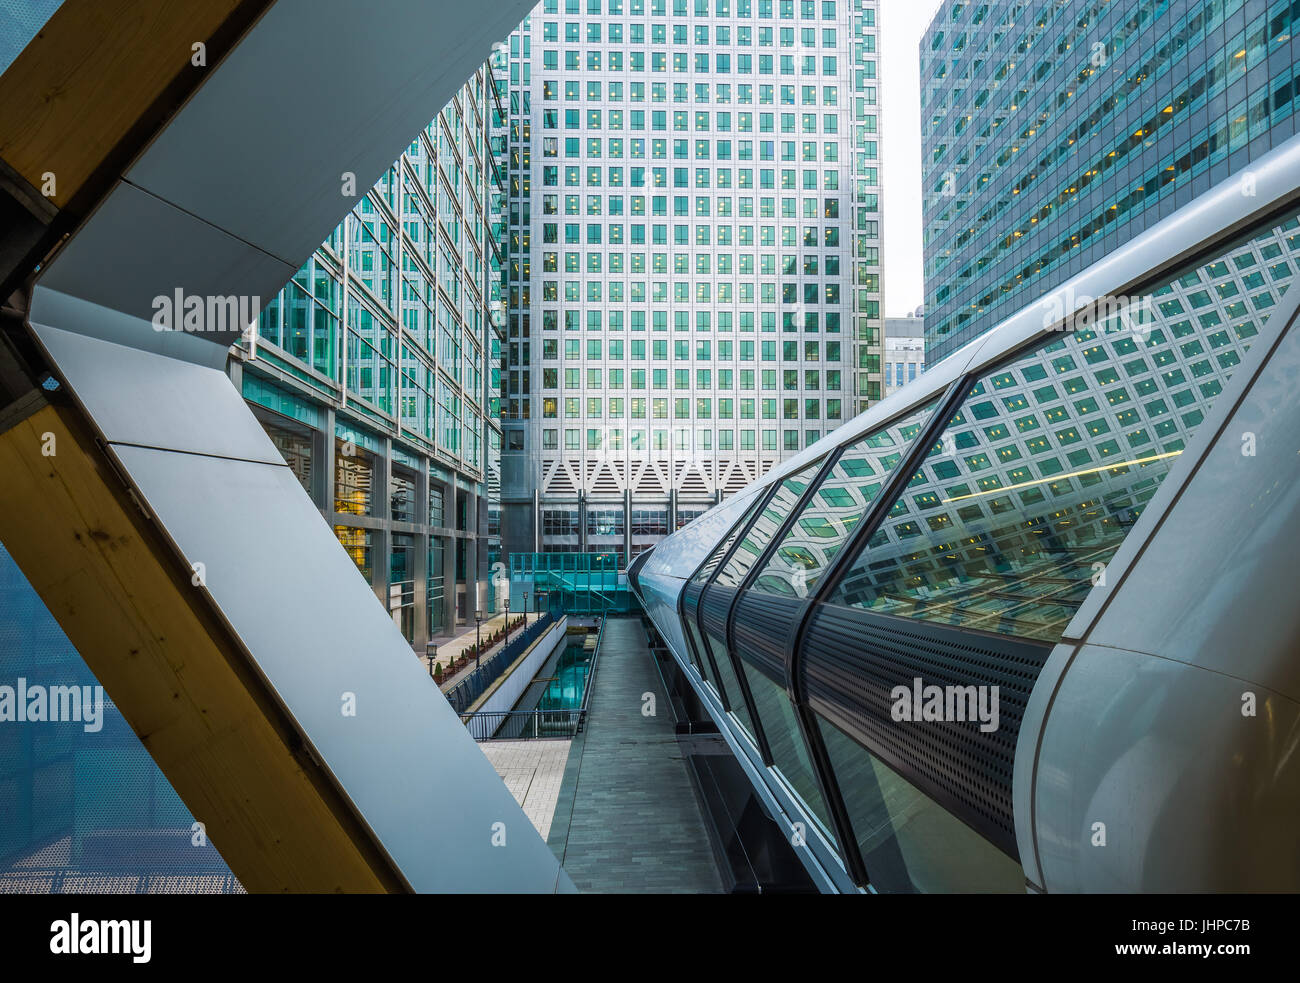 Londra, Inghilterra - pedonale pubblica cross rail passerella al quartiere finanziario di Canary Wharf con grattacieli Foto Stock